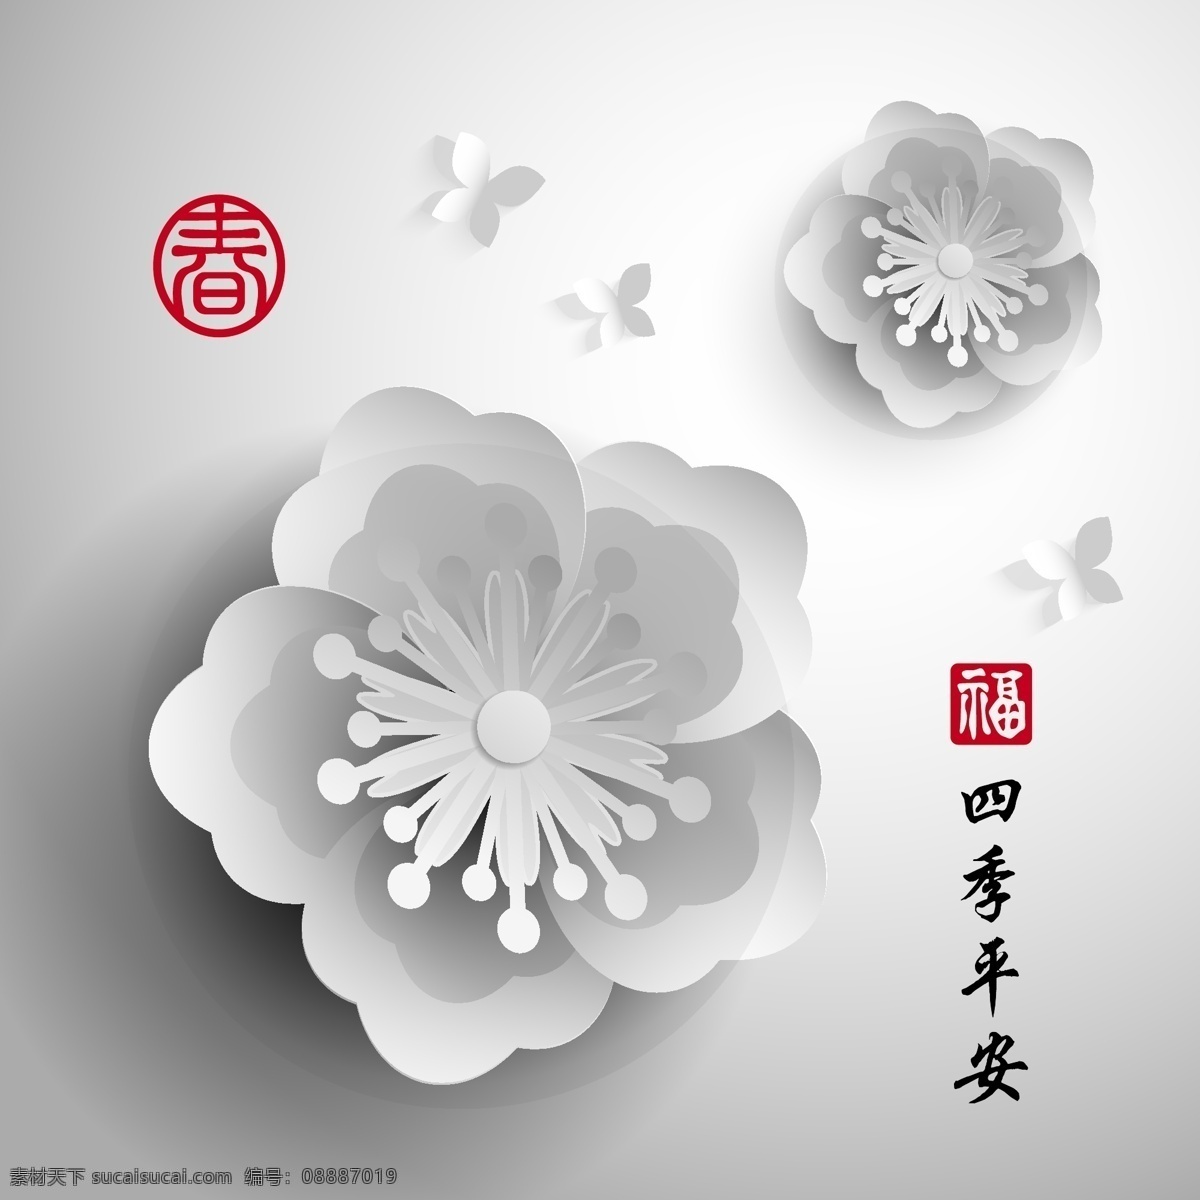 白色 梅花 四季 平安 节日 元素 创意 花朵 植物